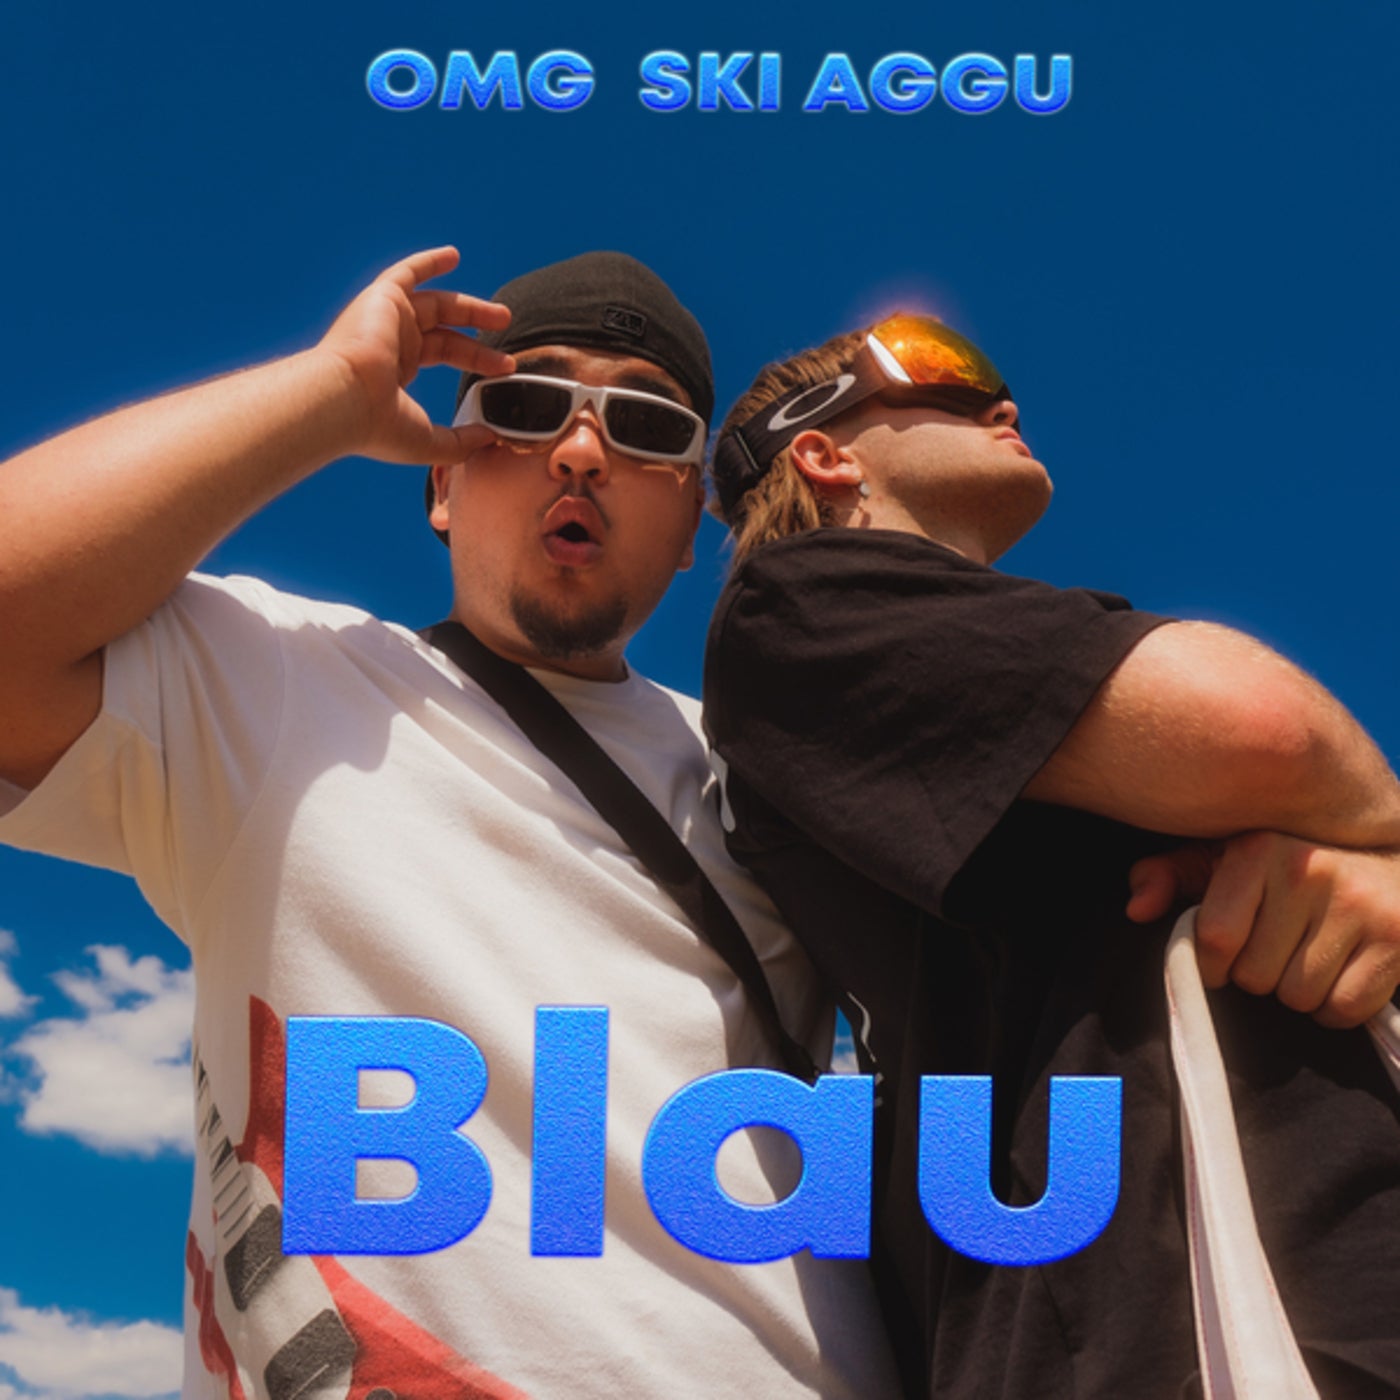 Blau by OMG and Ski Aggu on Beatsource